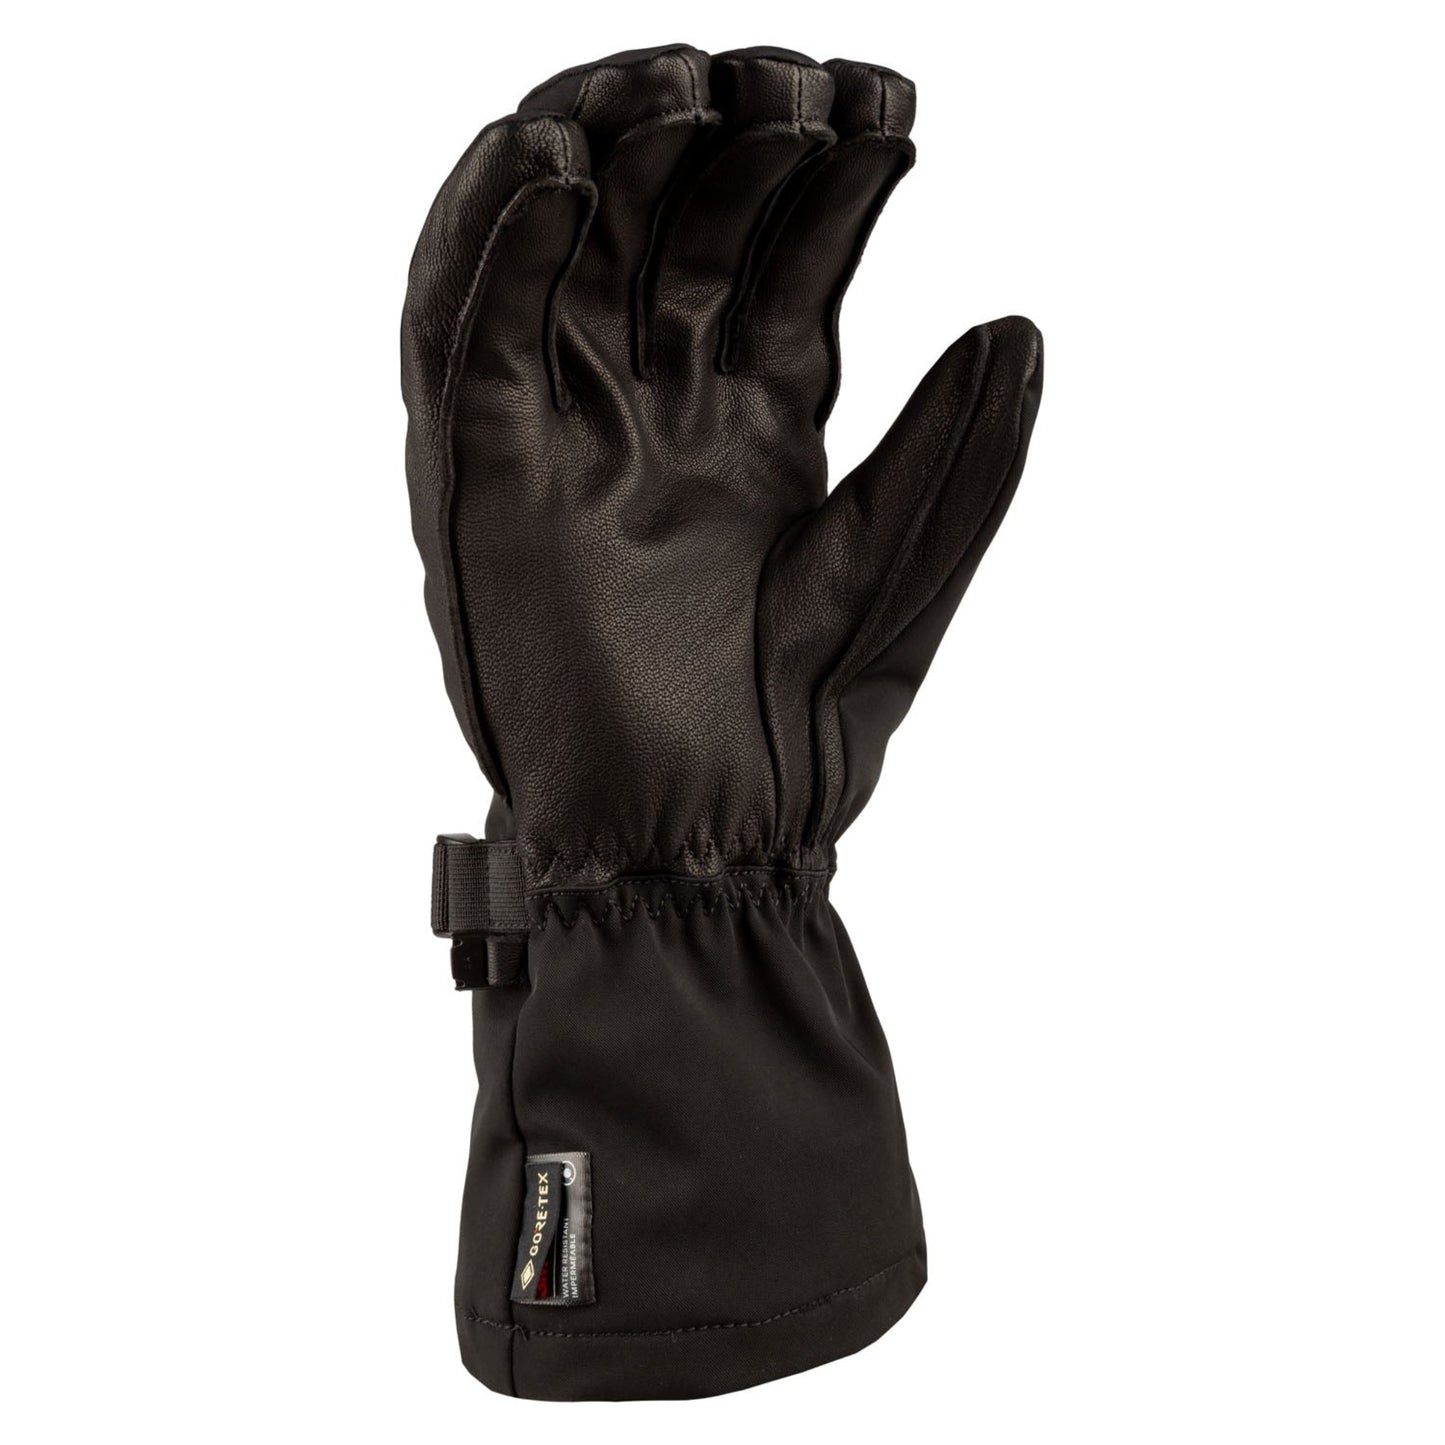 Klim Fusion Glove